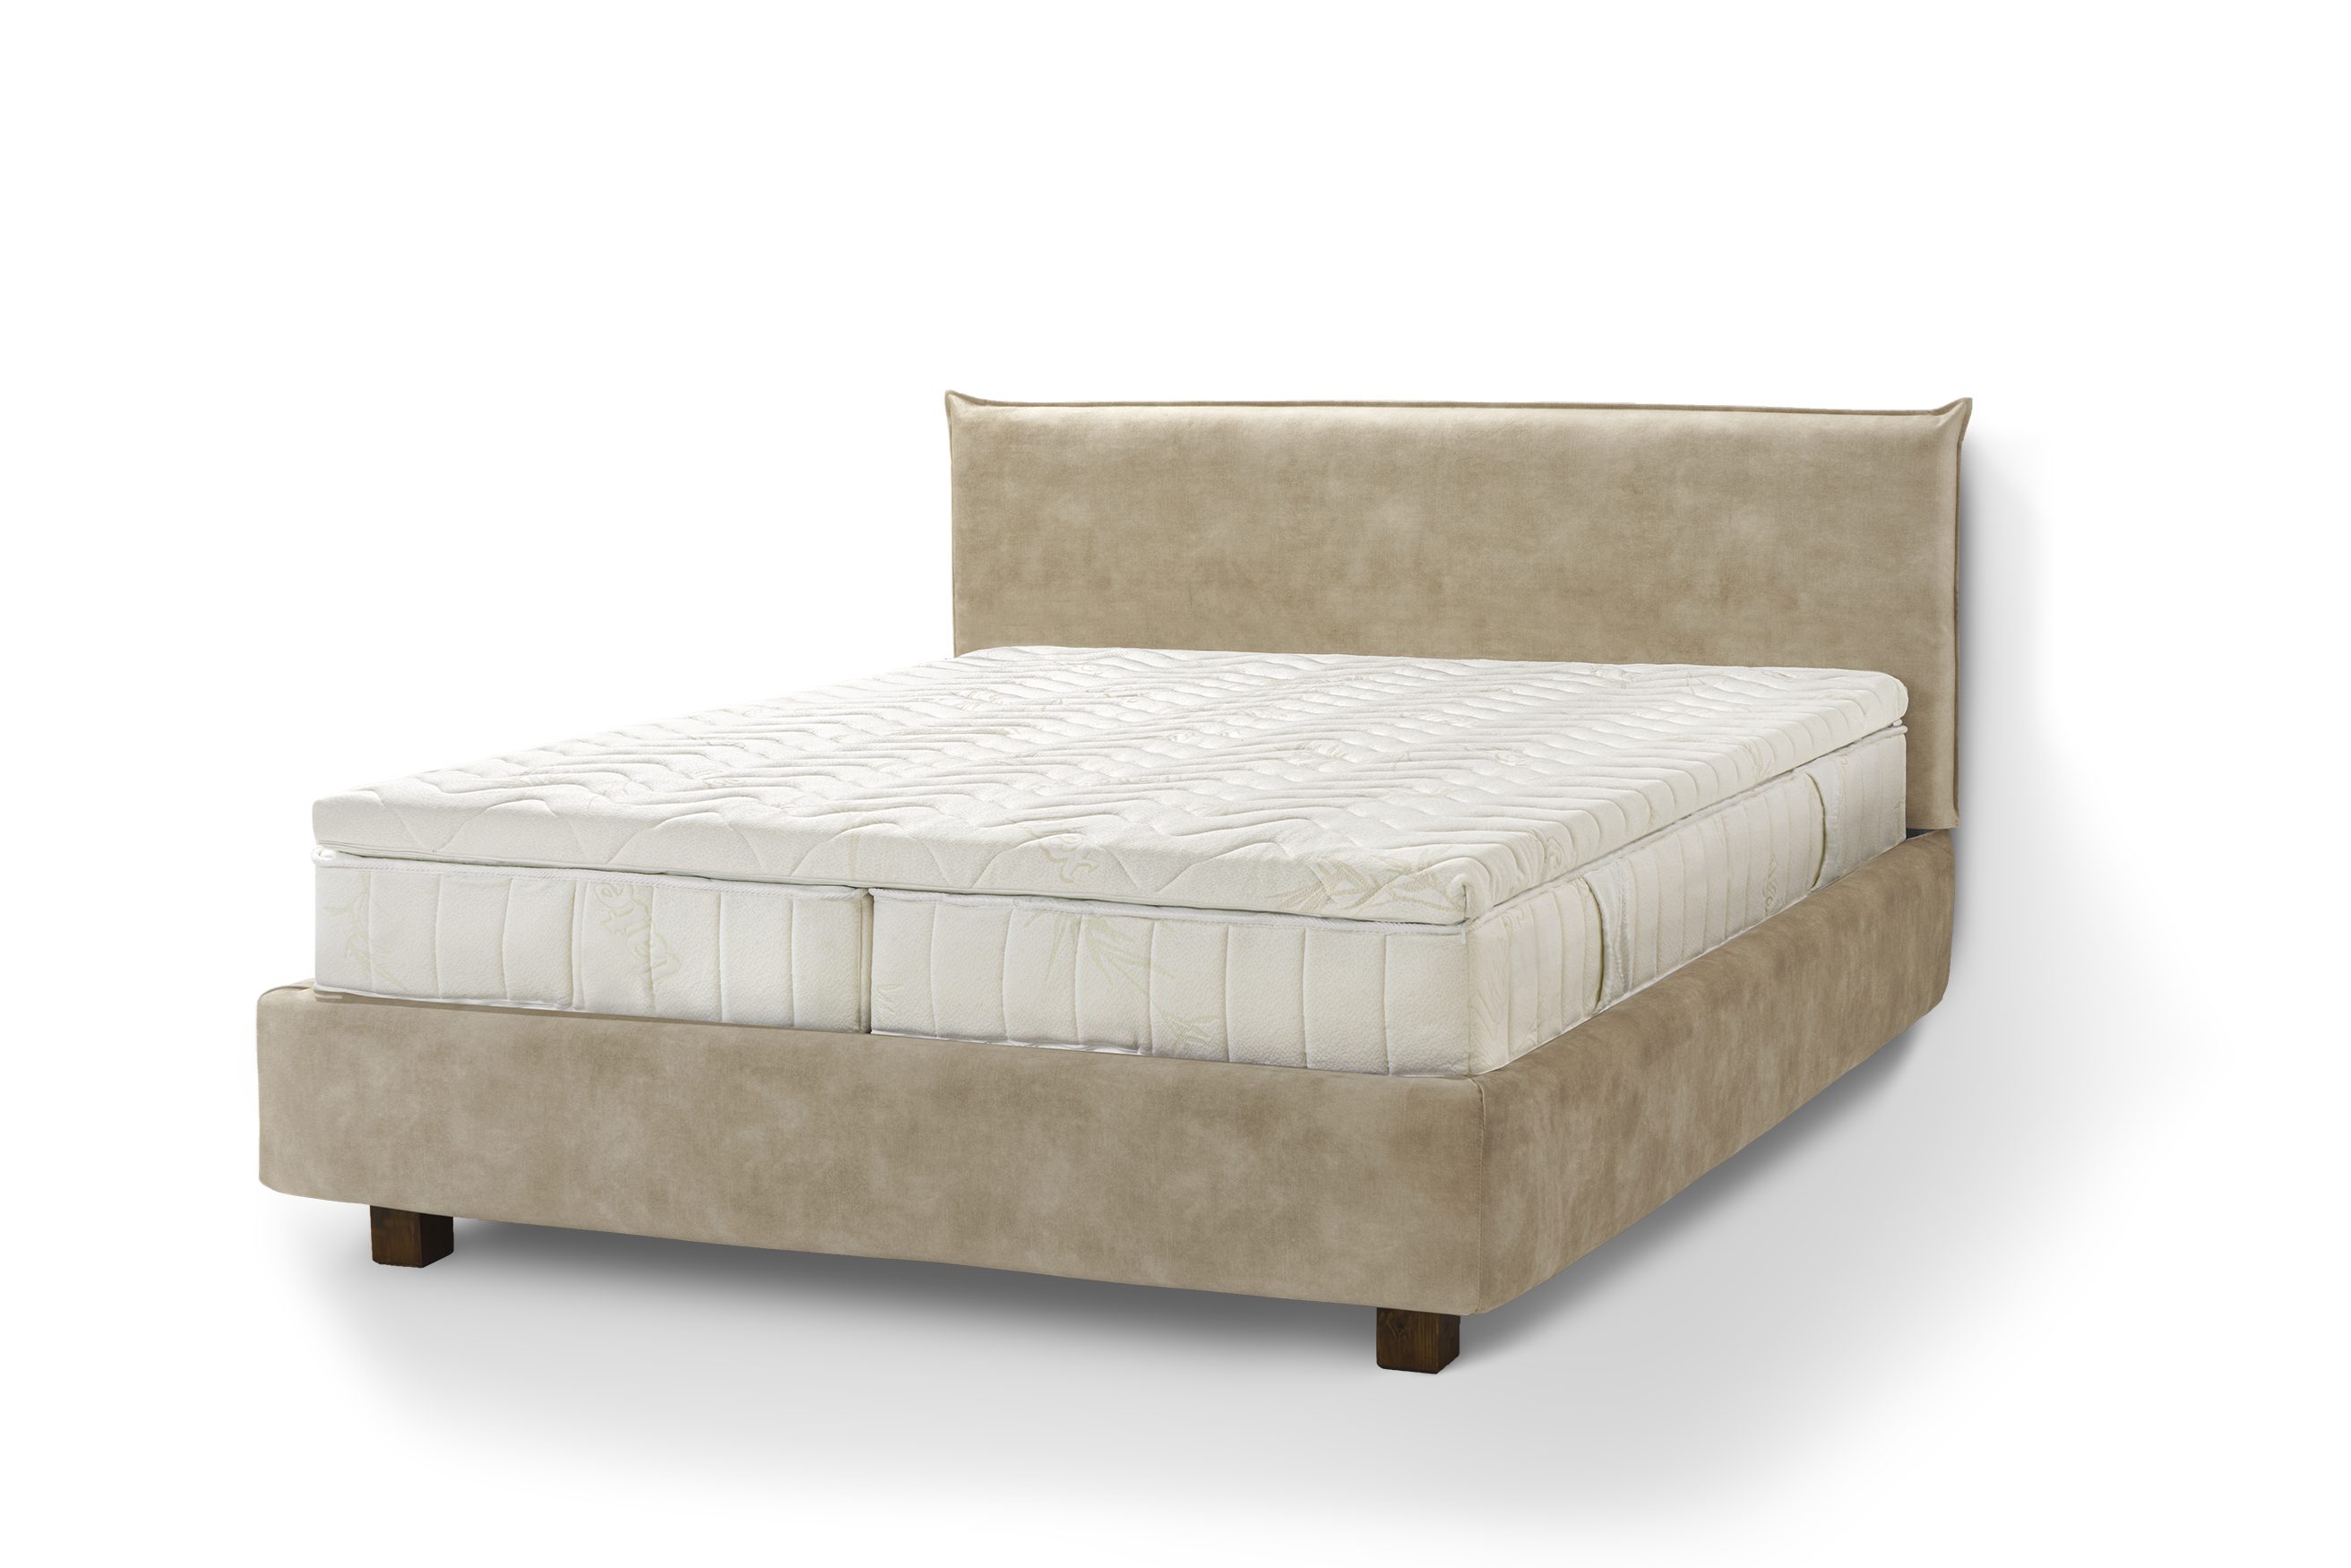 Letti Moderni Holzbett Bett Puro, hergestellt aus hochwertigem Massivholz Plüsch Sand | Jugendbetten